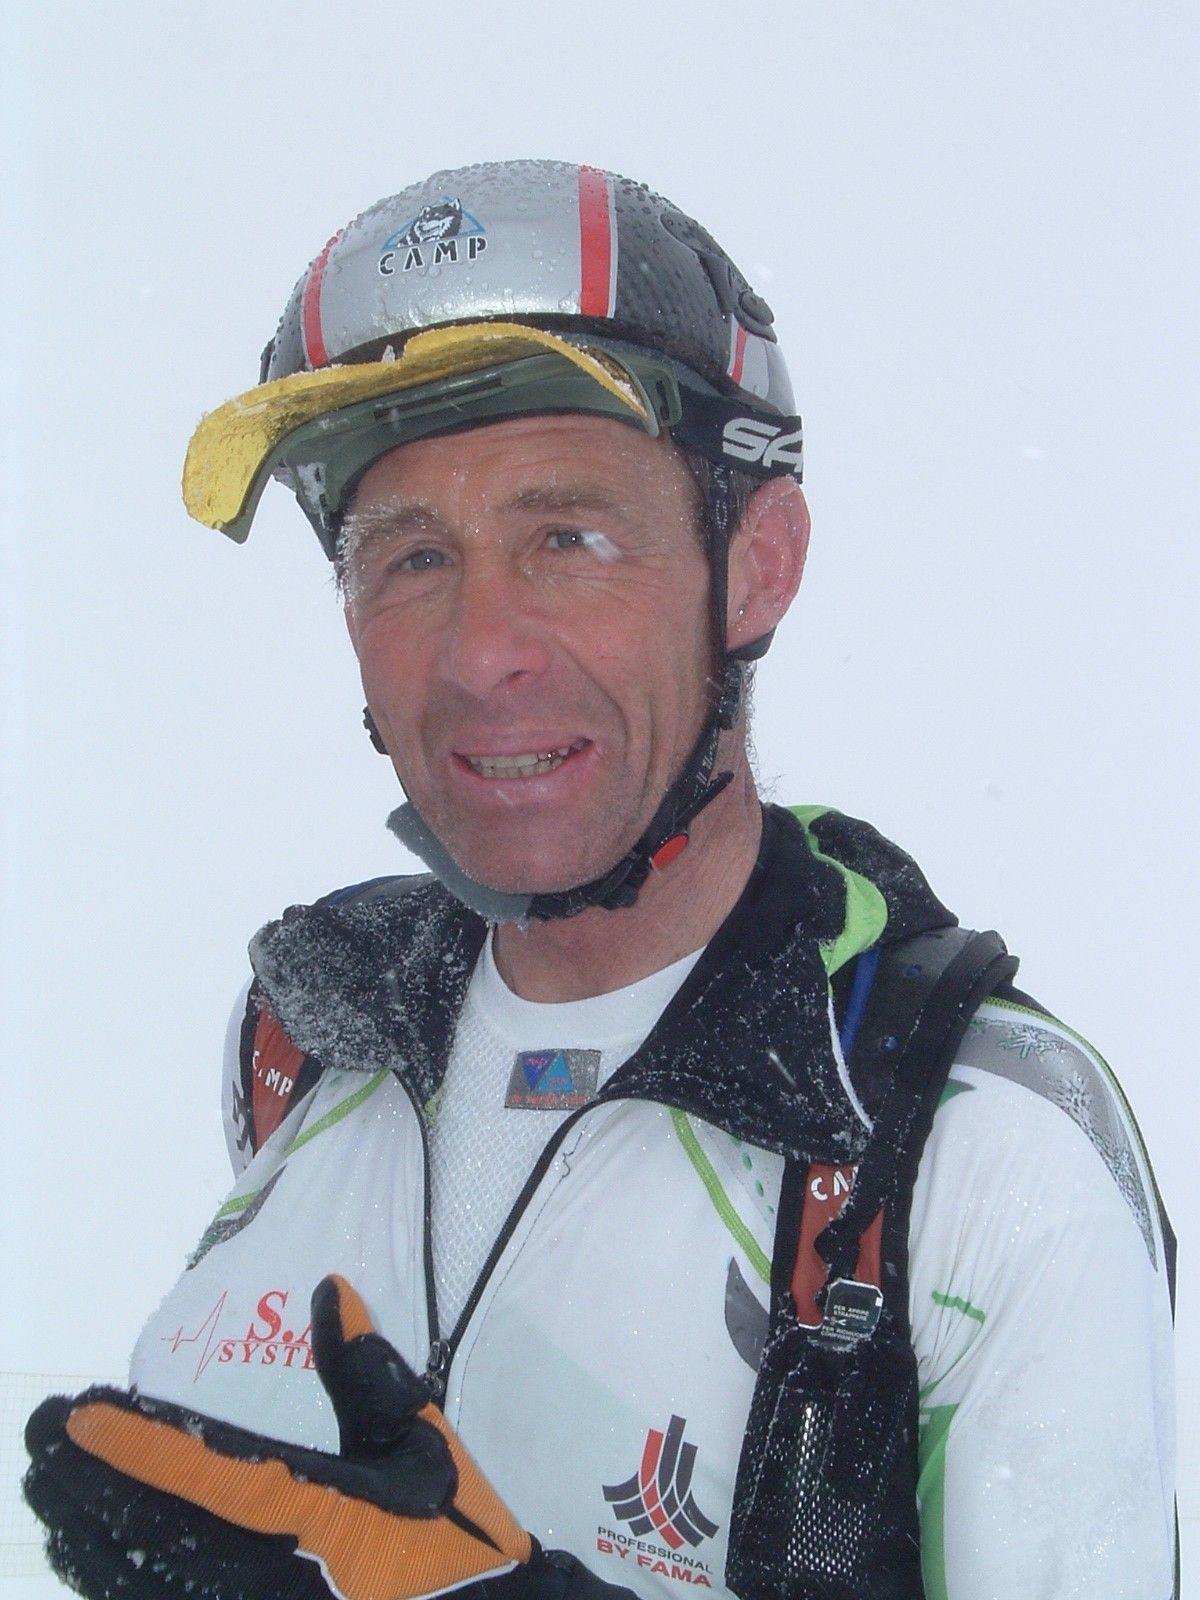 La nazionale italiana giovani di sci alpinismo al 17Â° Memorial Fabio Stedile, Passo Rolle